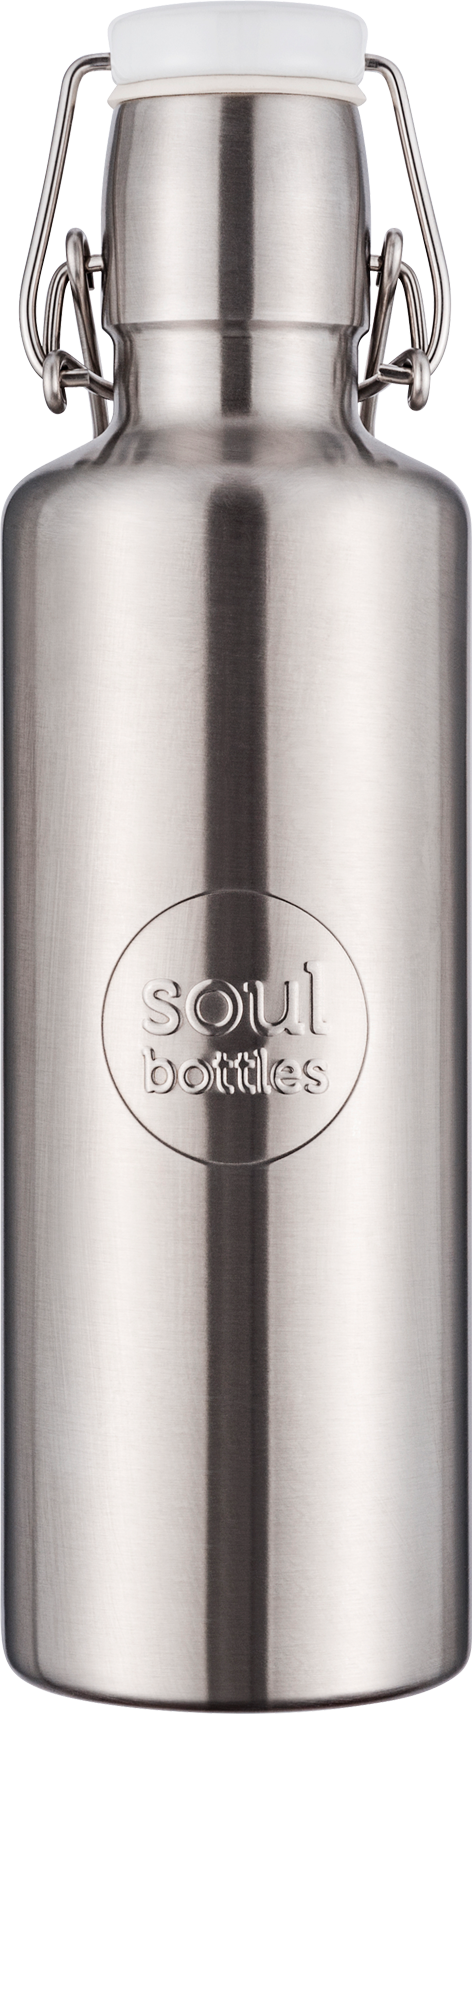 Soulbottles - Steel bottle basic grau 0,6l